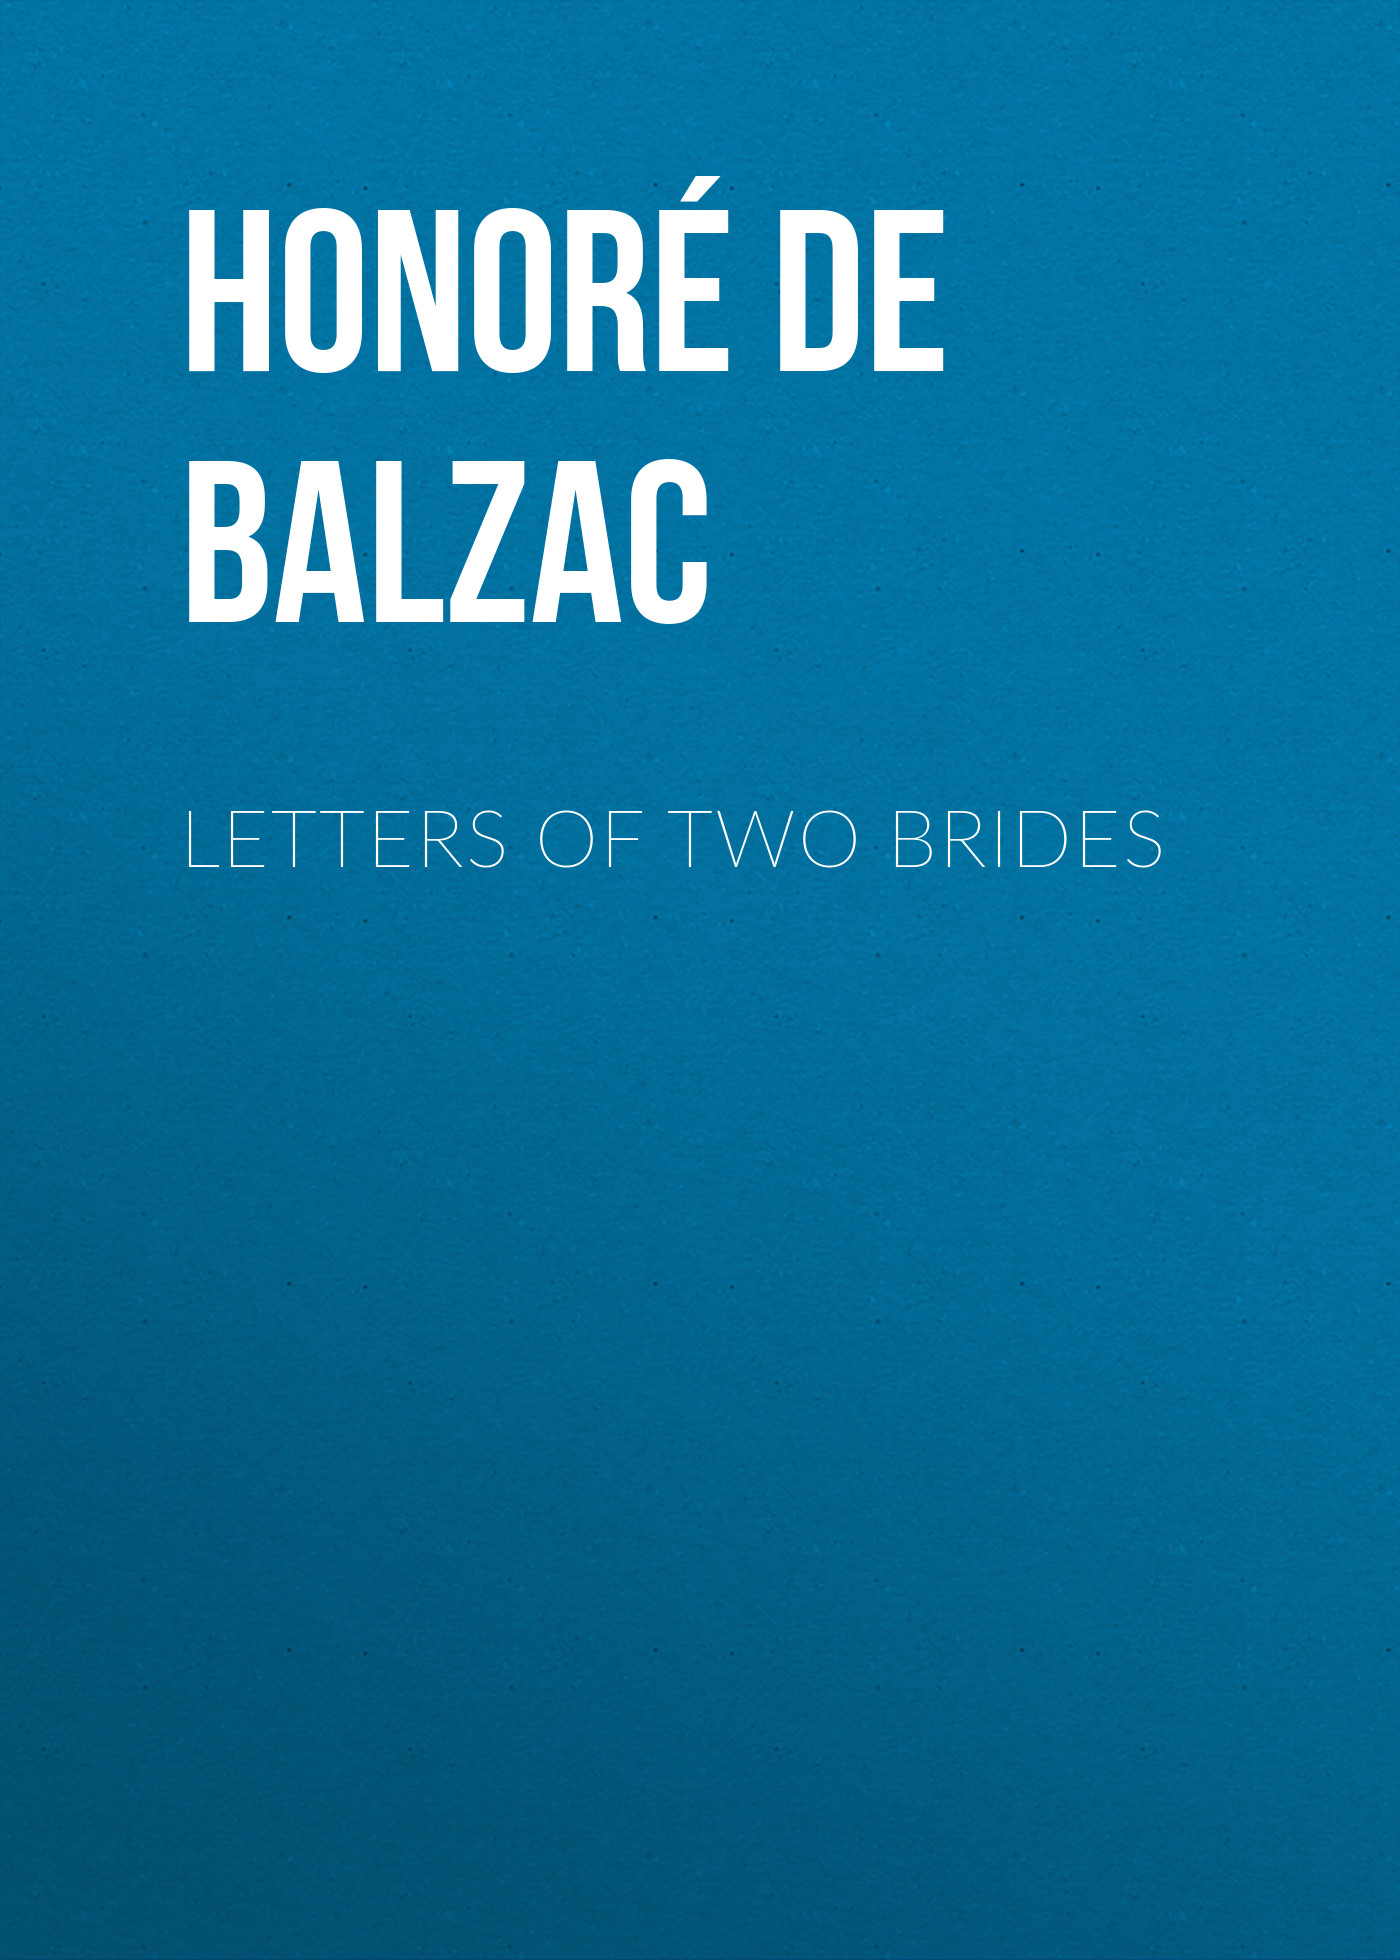 Книга Letters of Two Brides из серии , созданная Honoré Balzac, может относится к жанру Литература 19 века, Зарубежная старинная литература, Зарубежная классика. Стоимость электронной книги Letters of Two Brides с идентификатором 25020059 составляет 0 руб.